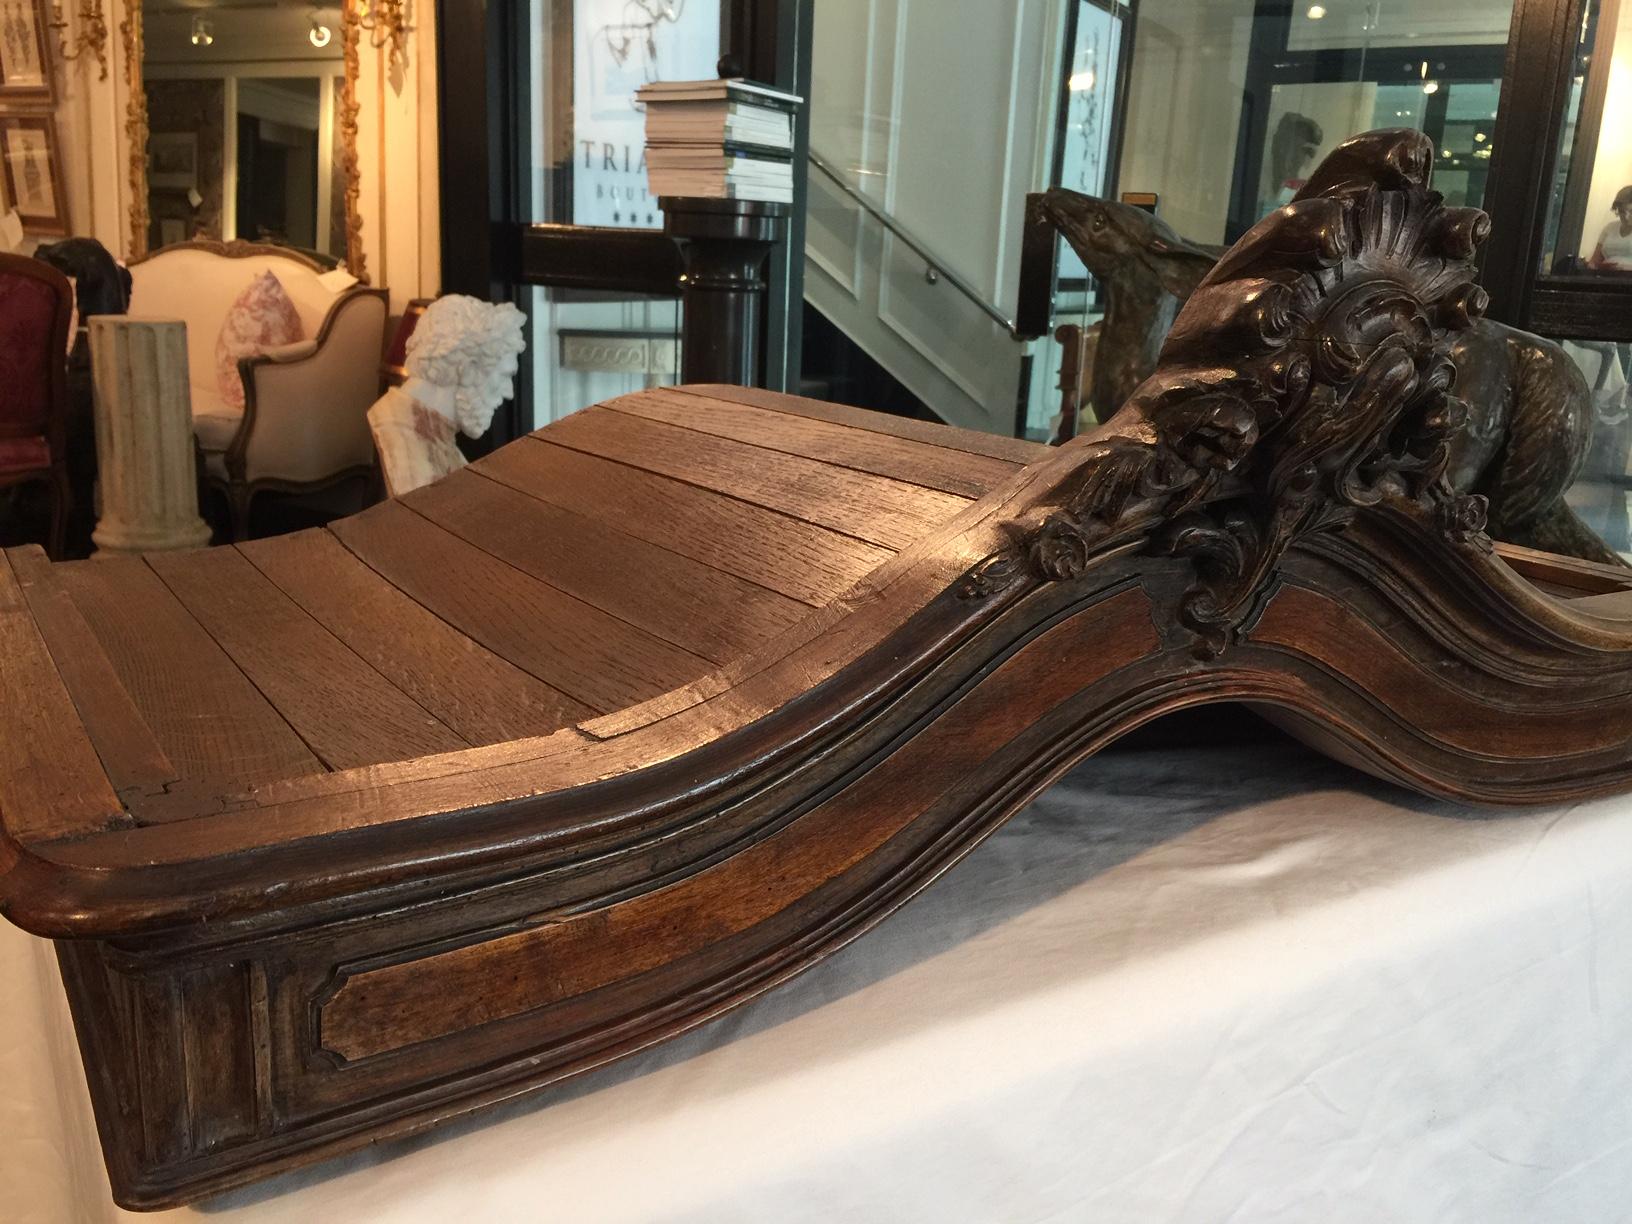 Chapeau de gendarme de style Louis XV français du 19ème siècle, était autrefois le dessus d'une armoire provençale.

Cette pièce magnifiquement sculptée a été reconvertie en baldaquin de lit. Avec un rideau à baldaquin (non inclus) attaché au Ciel